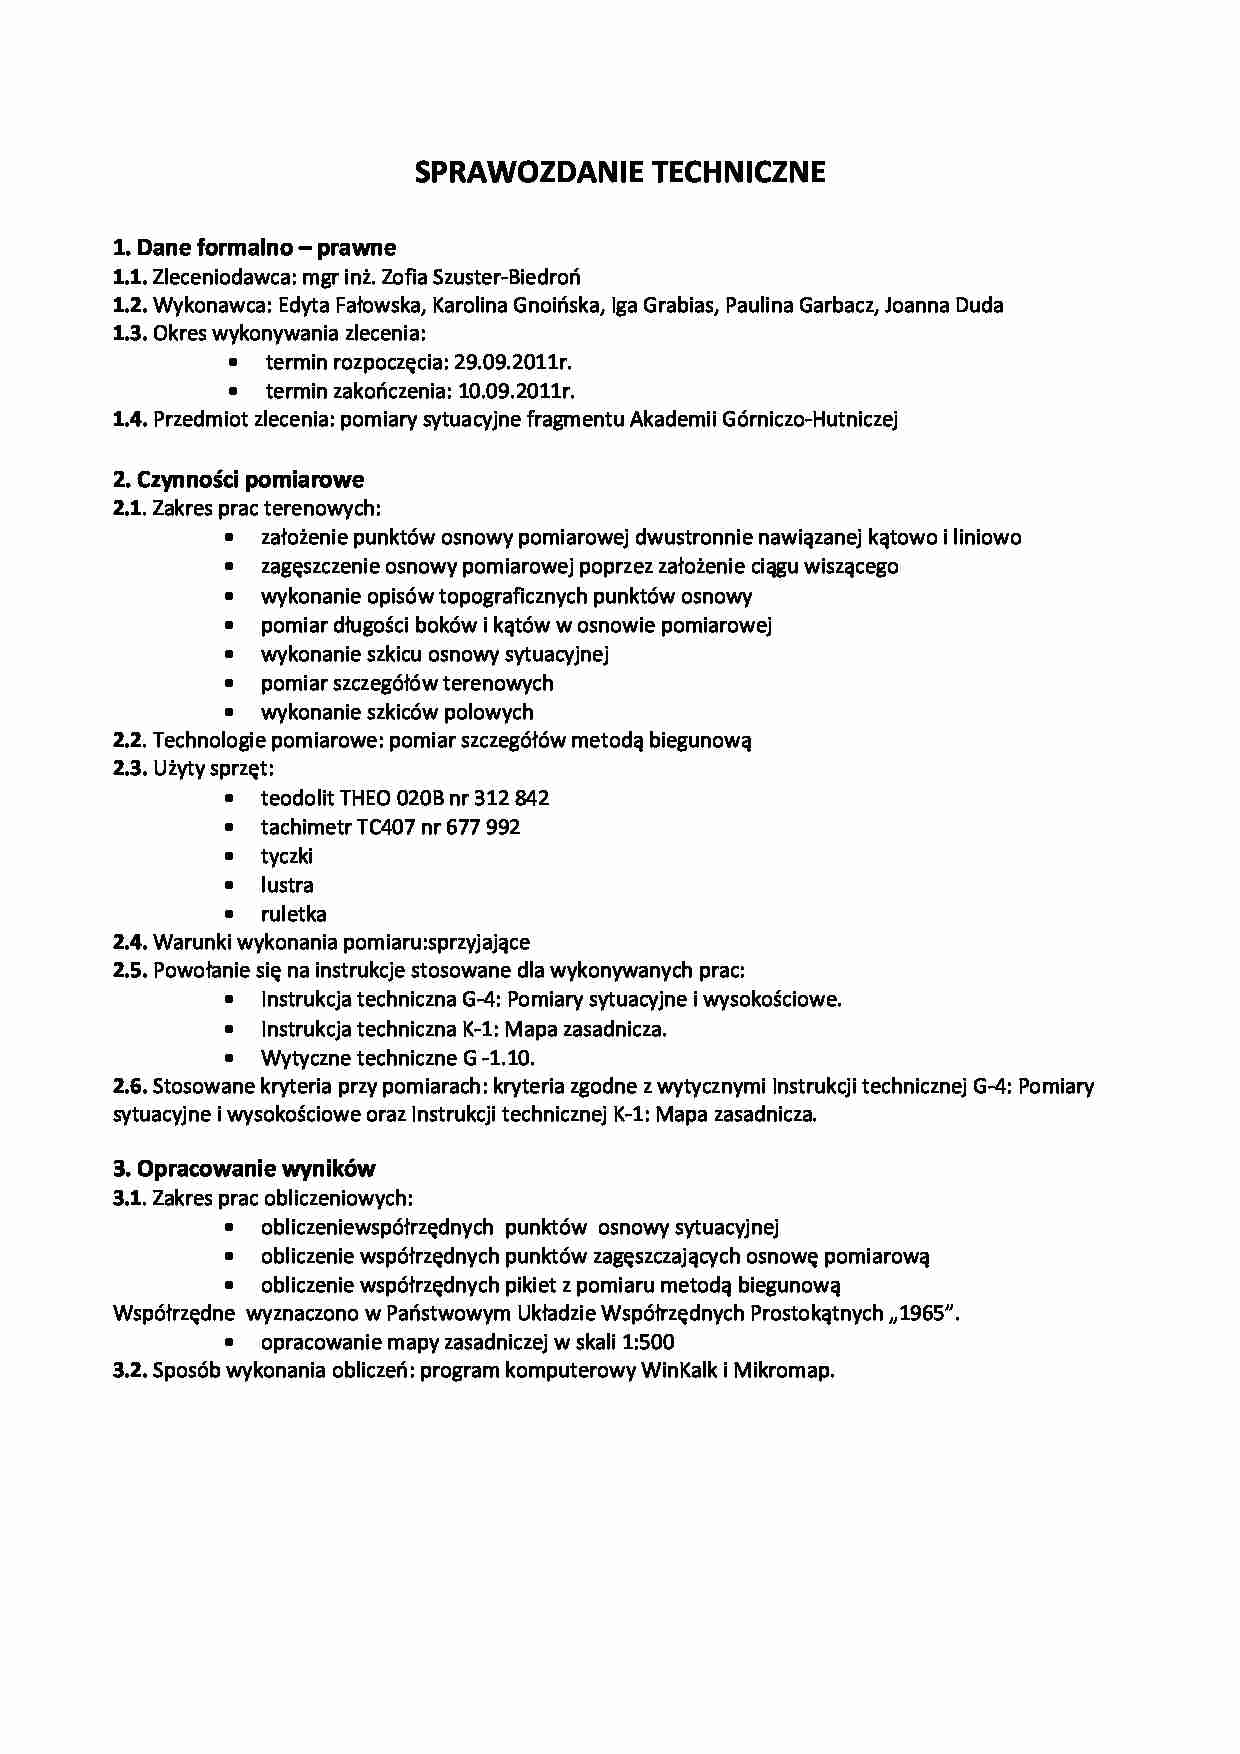 Sprawozdanie techniczne zlecenia: pomiary sytuacyjne fragmentu Akademii Górniczo-Hutniczej - strona 1